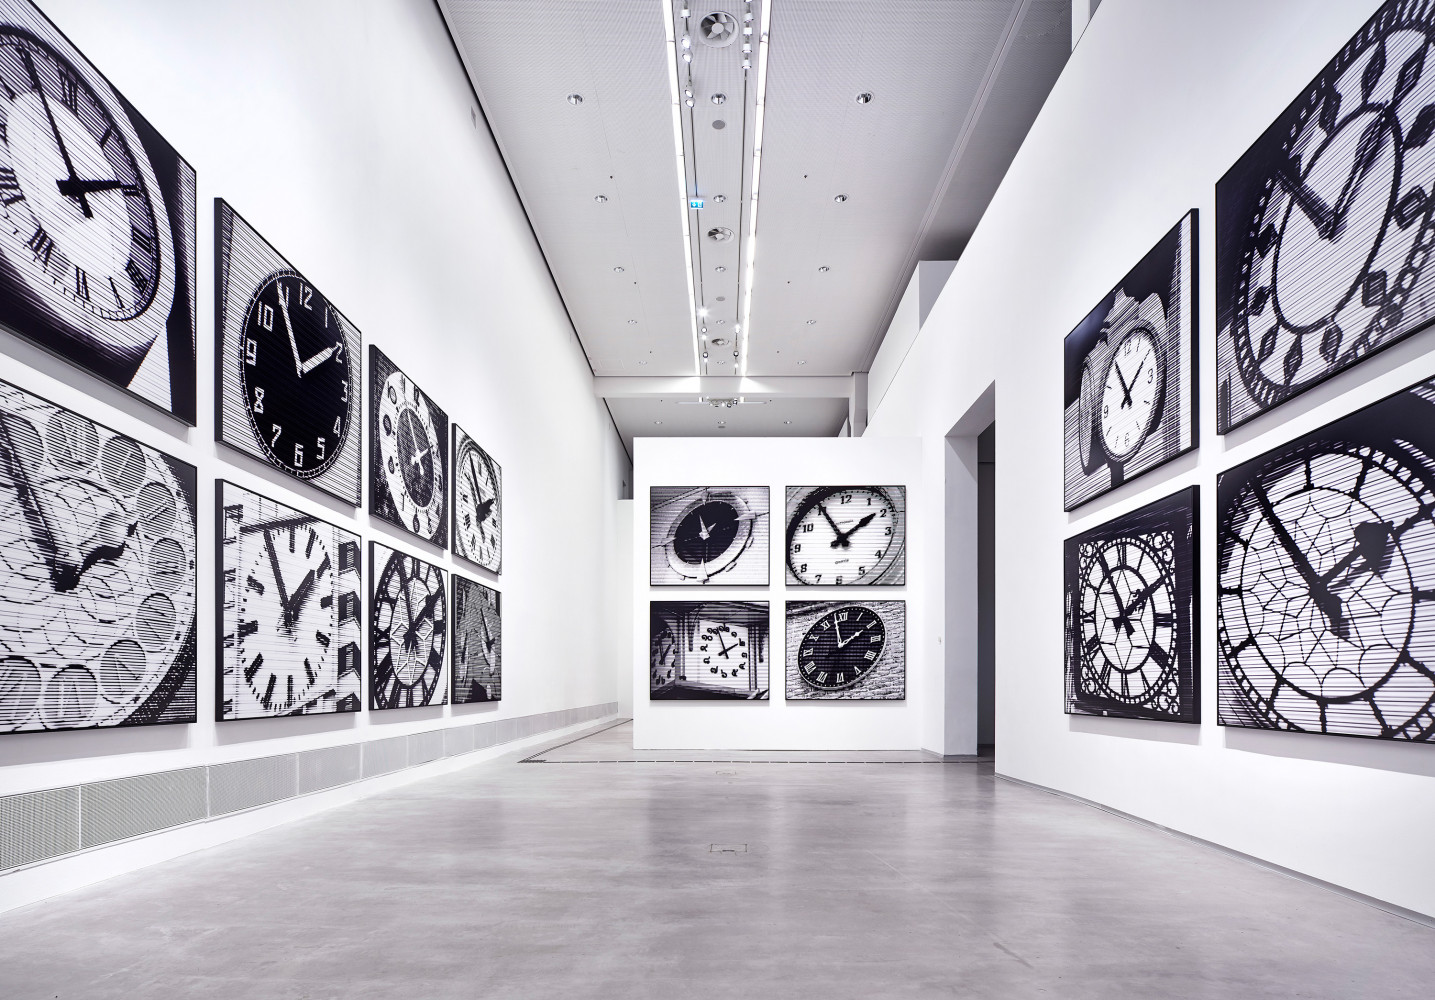 Bettina Pousttchi, ‘In Recent Years, Berlinische Galerie – Museum for Modern Art Berlin’, Installation view, Buchmann Galerie, 2019